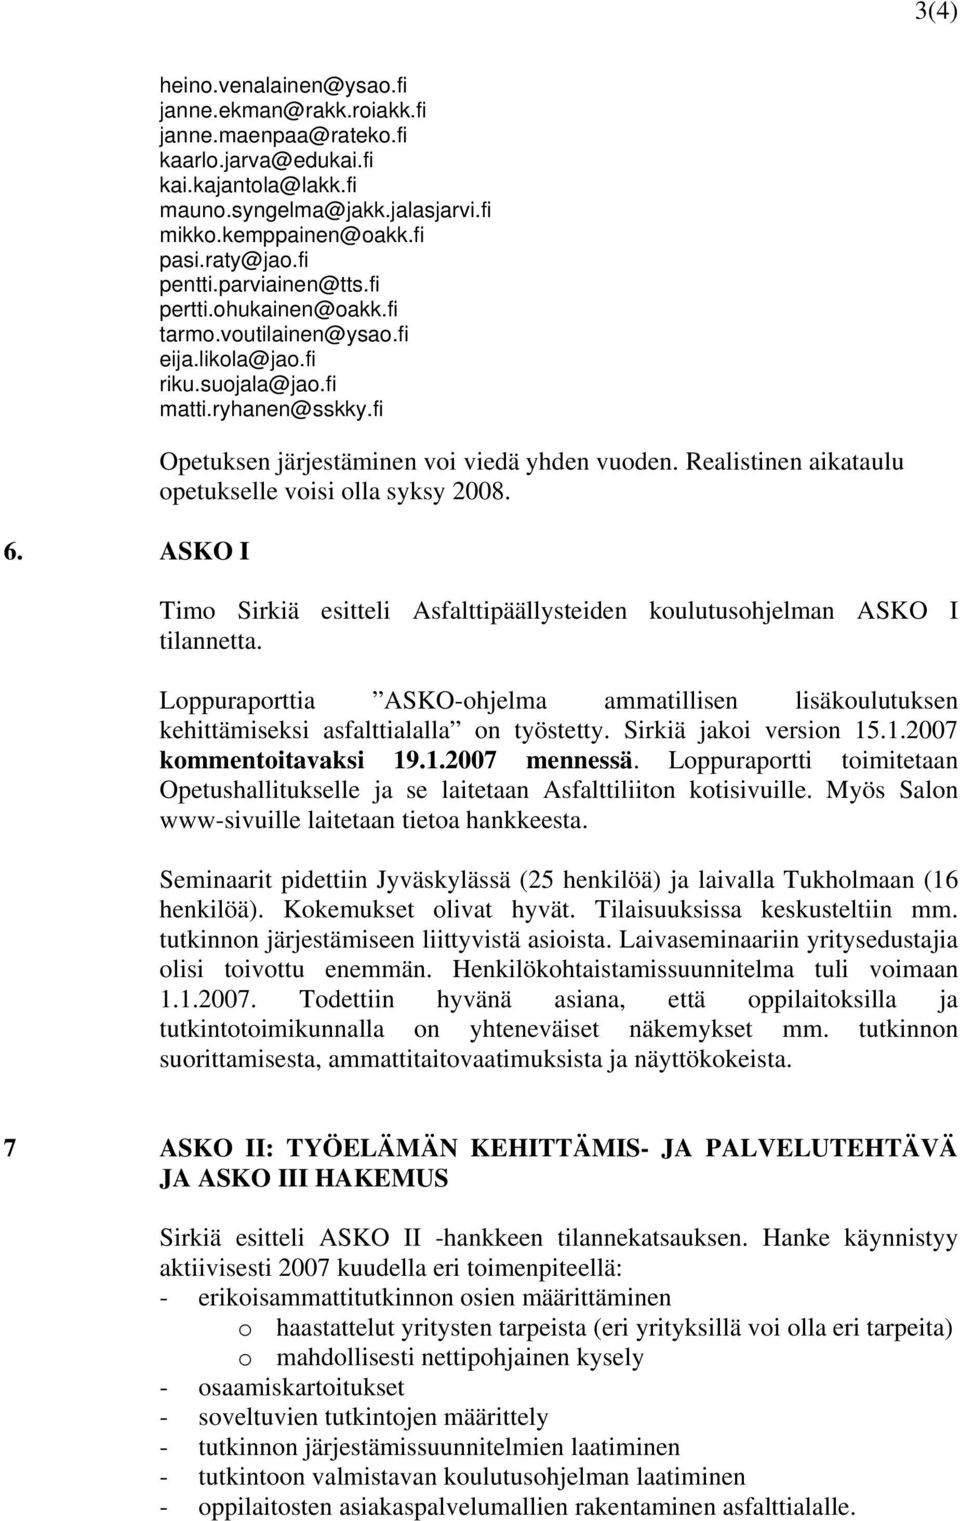 Realistinen aikataulu opetukselle voisi olla syksy 2008. Timo Sirkiä esitteli Asfalttipäällysteiden koulutusohjelman ASKO I tilannetta.